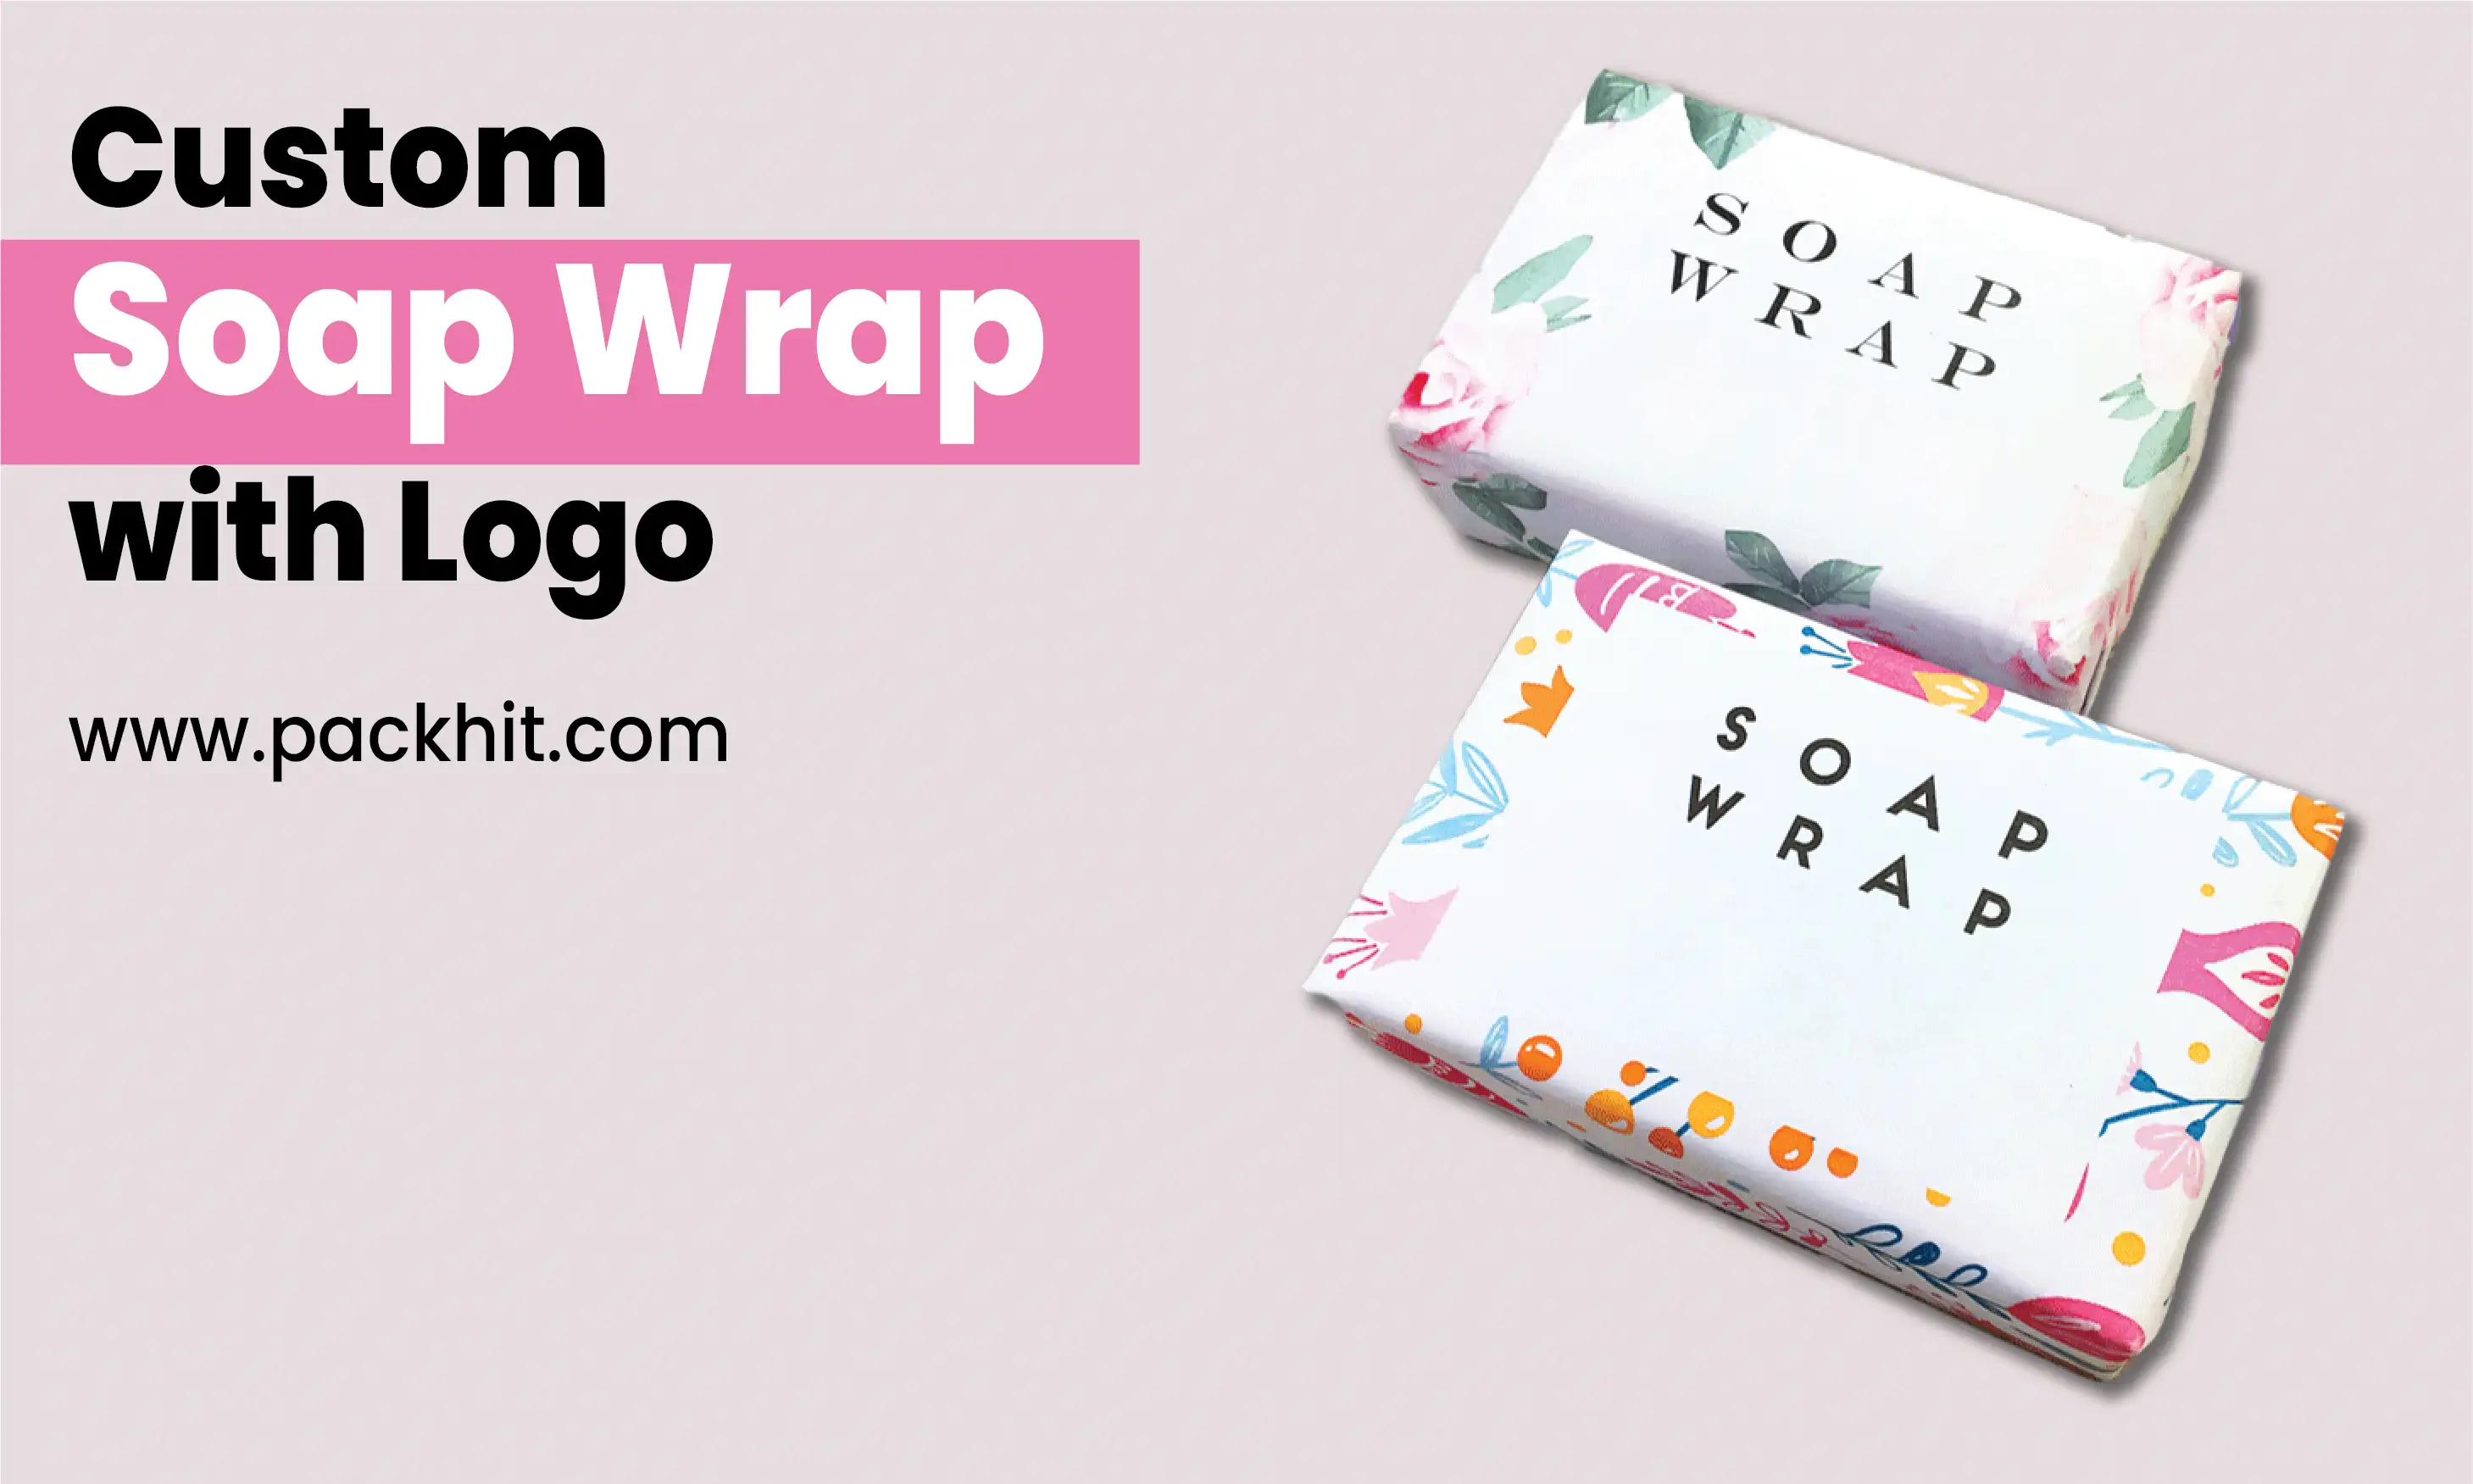 Custom Soap Wraps with Logo